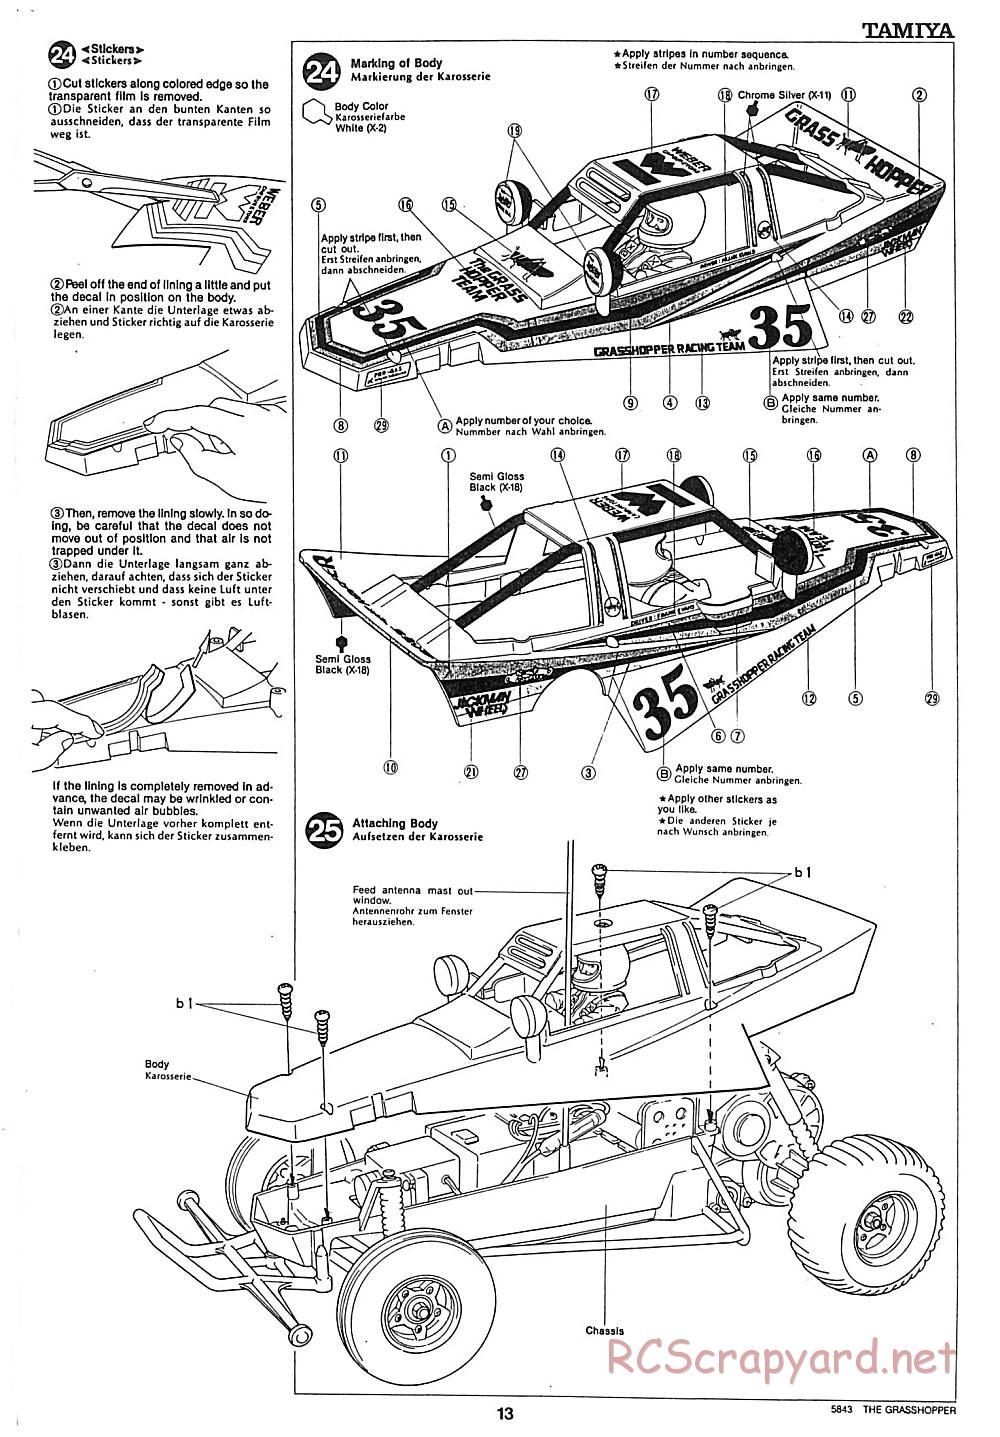 Tamiya - The Grasshopper - 58043 - Manual - Page 13